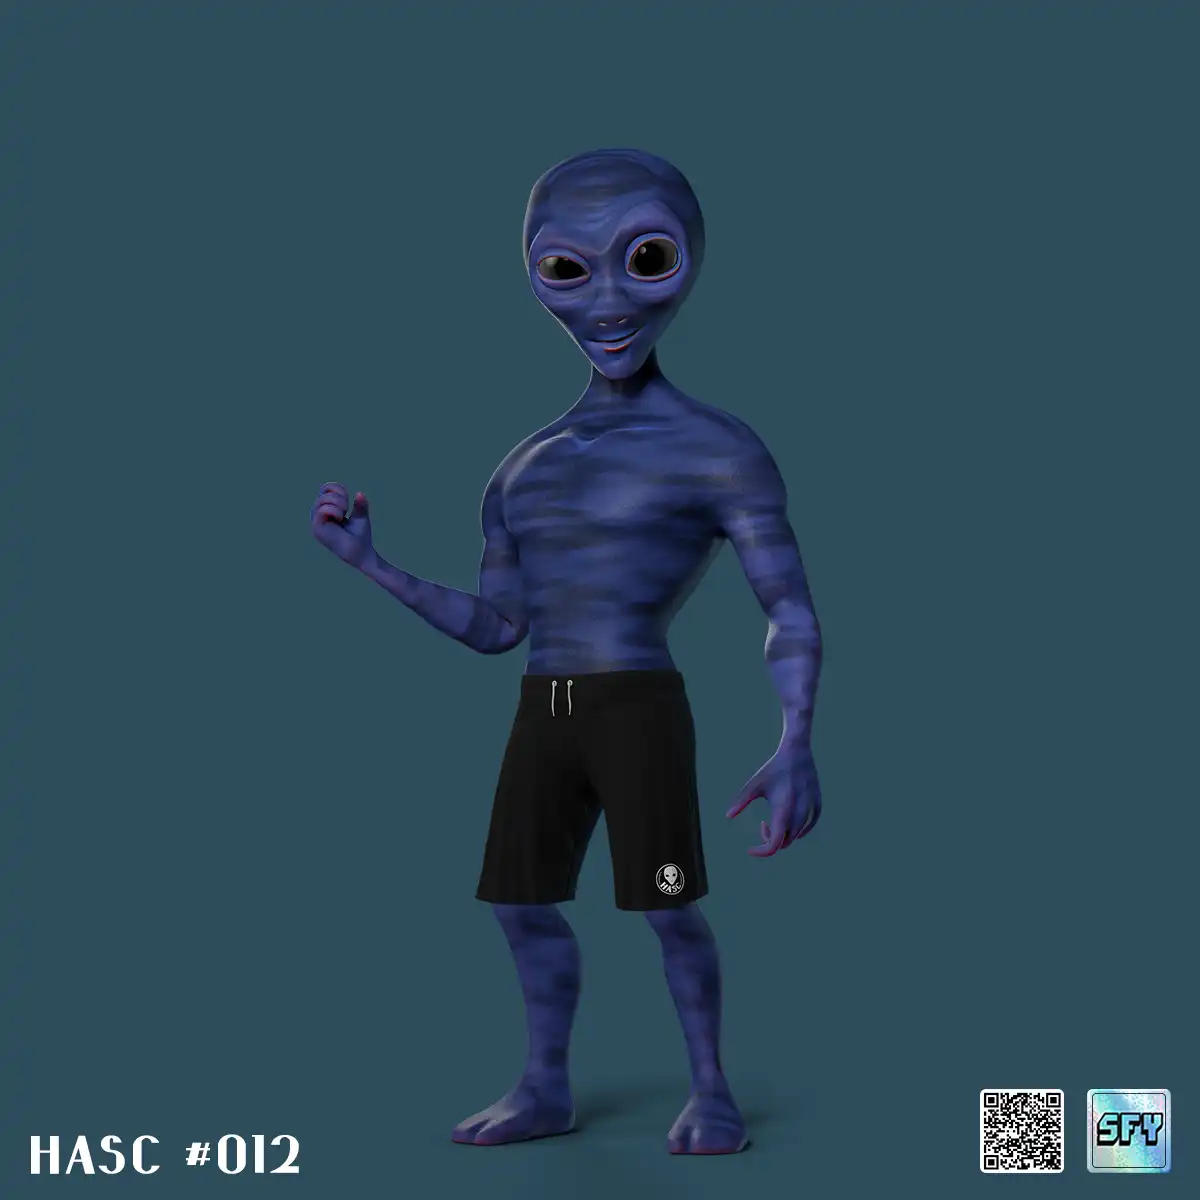 HASC Ordinals on Ordinal Hub | #613864